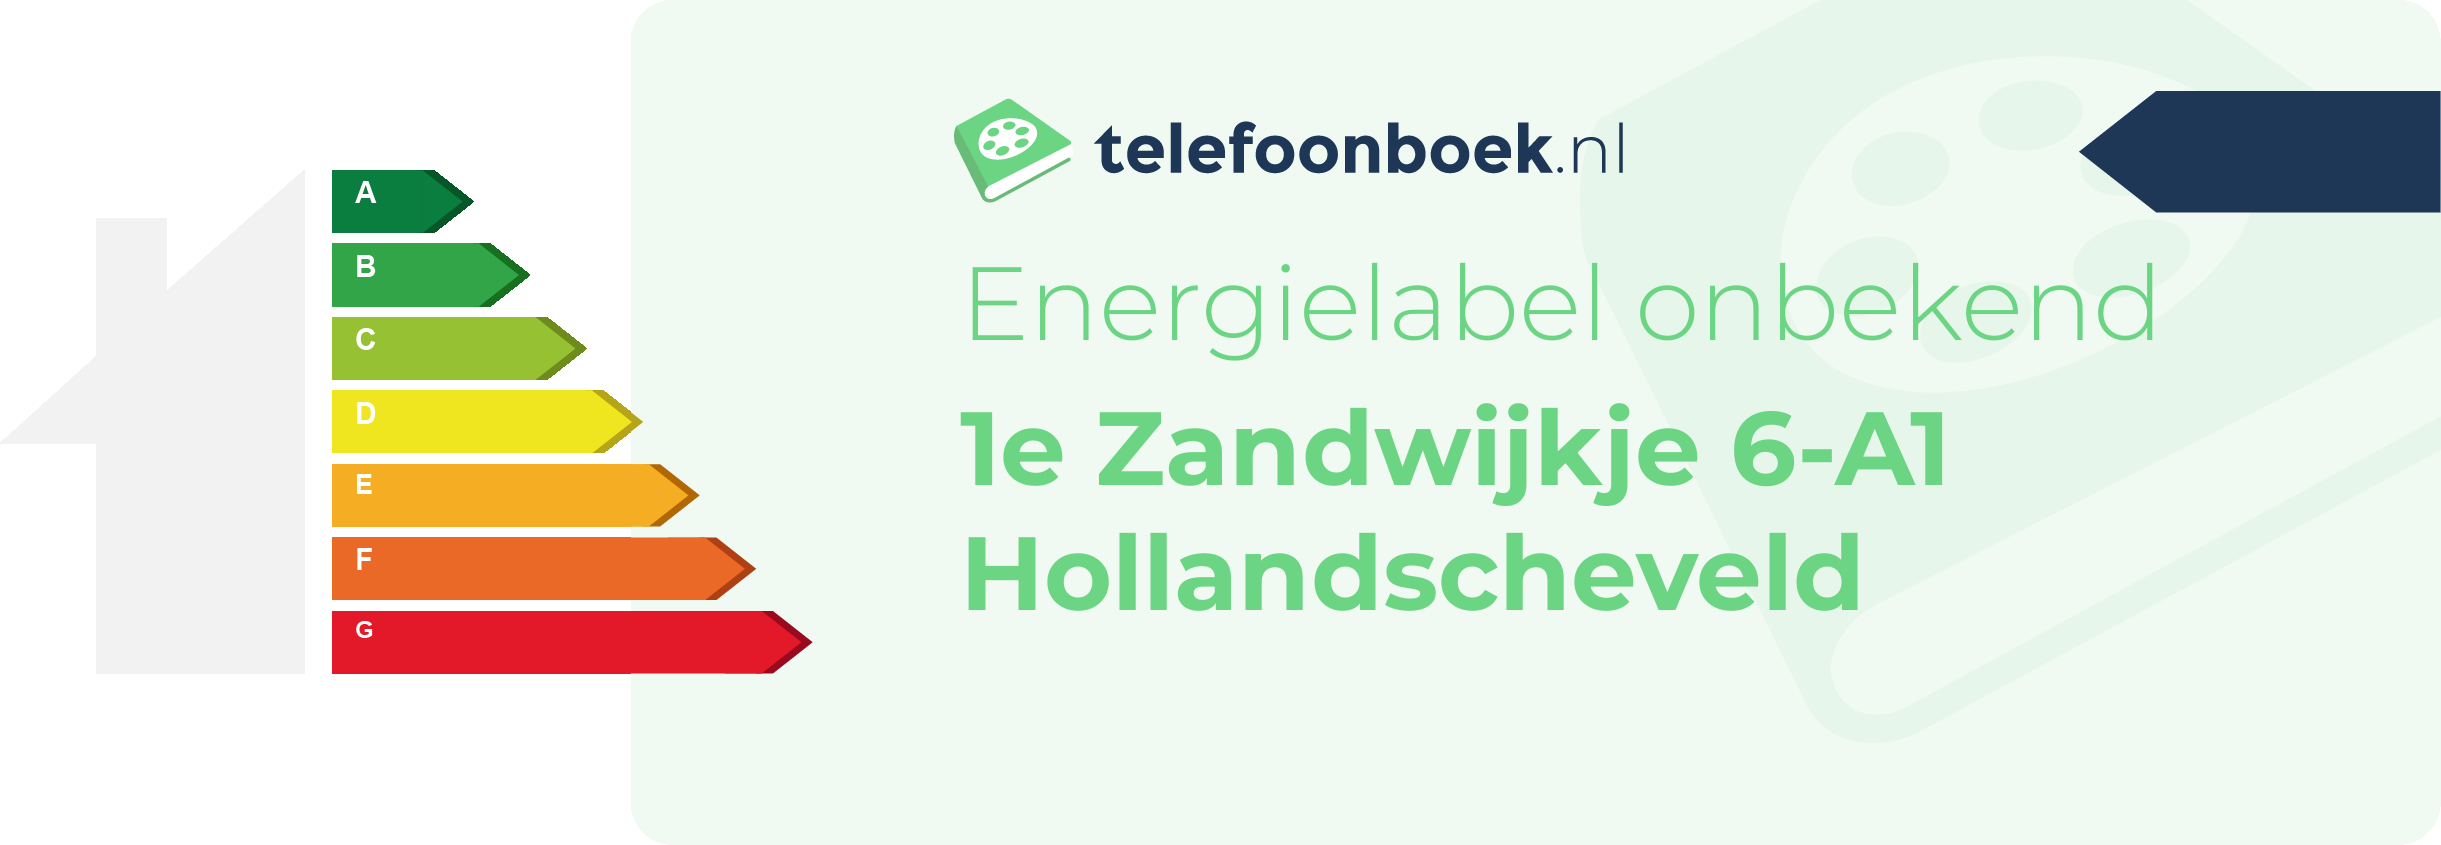 Energielabel 1e Zandwijkje 6-A1 Hollandscheveld